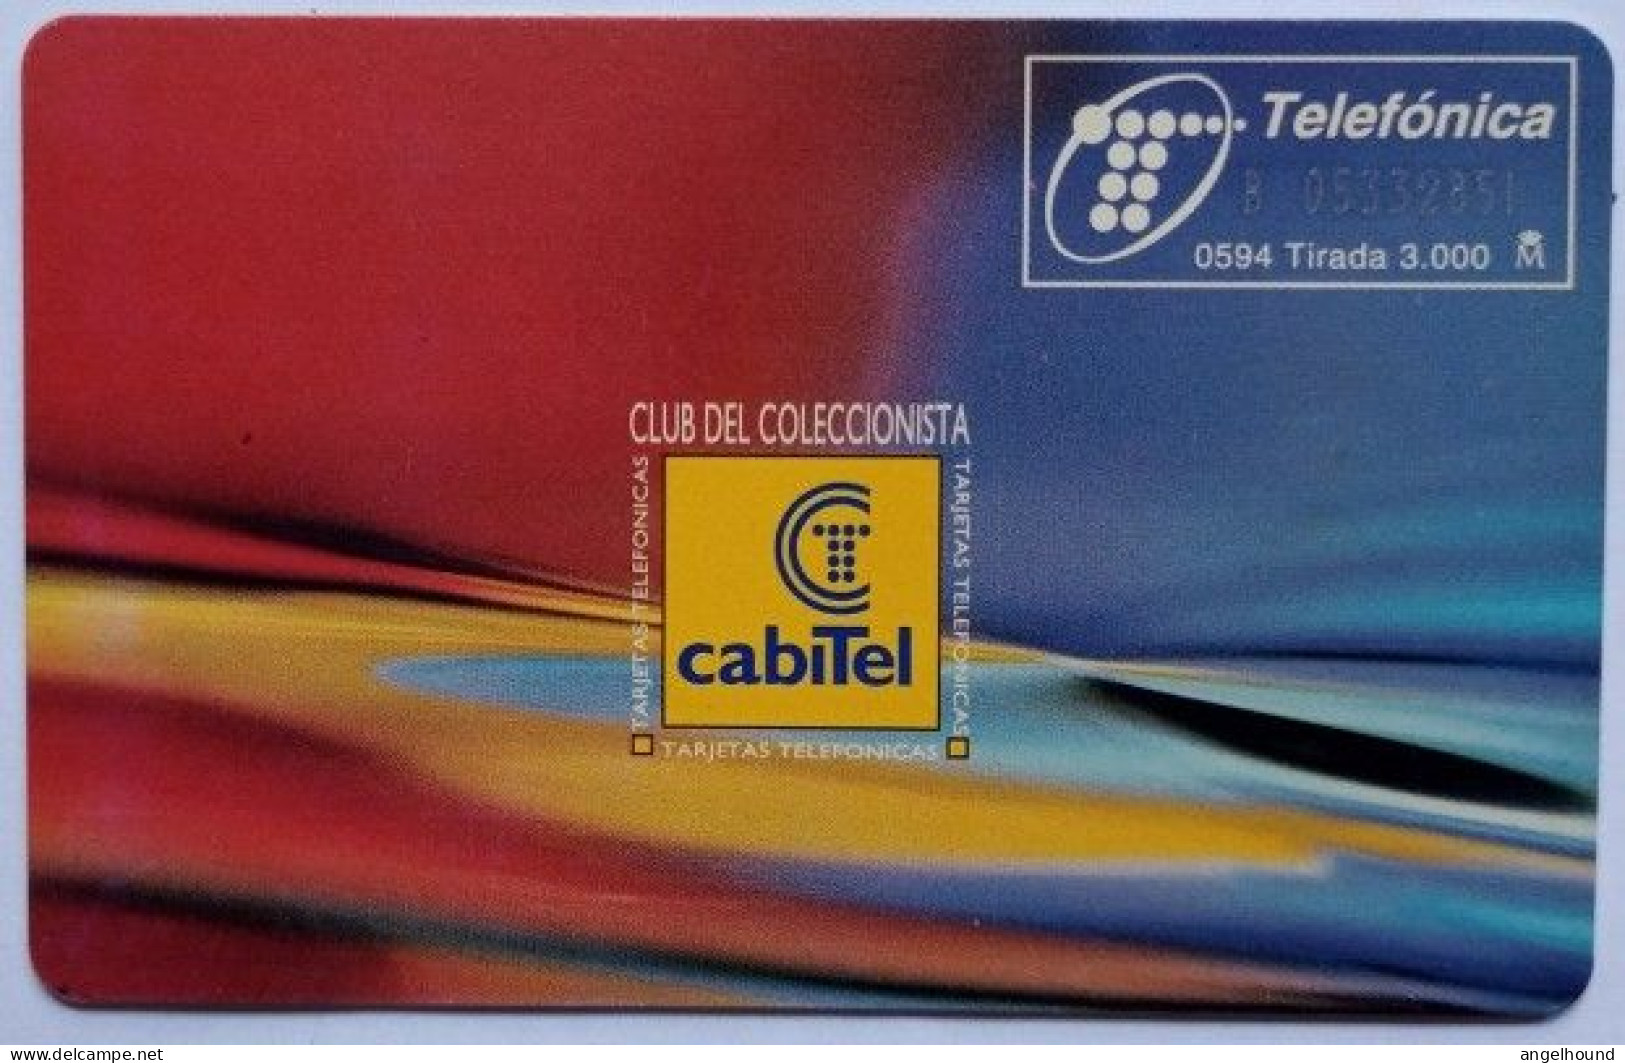 Spain 100 Pta. Catalogo Oficial De Tarjetas Telefonicas - Emisiones Privadas